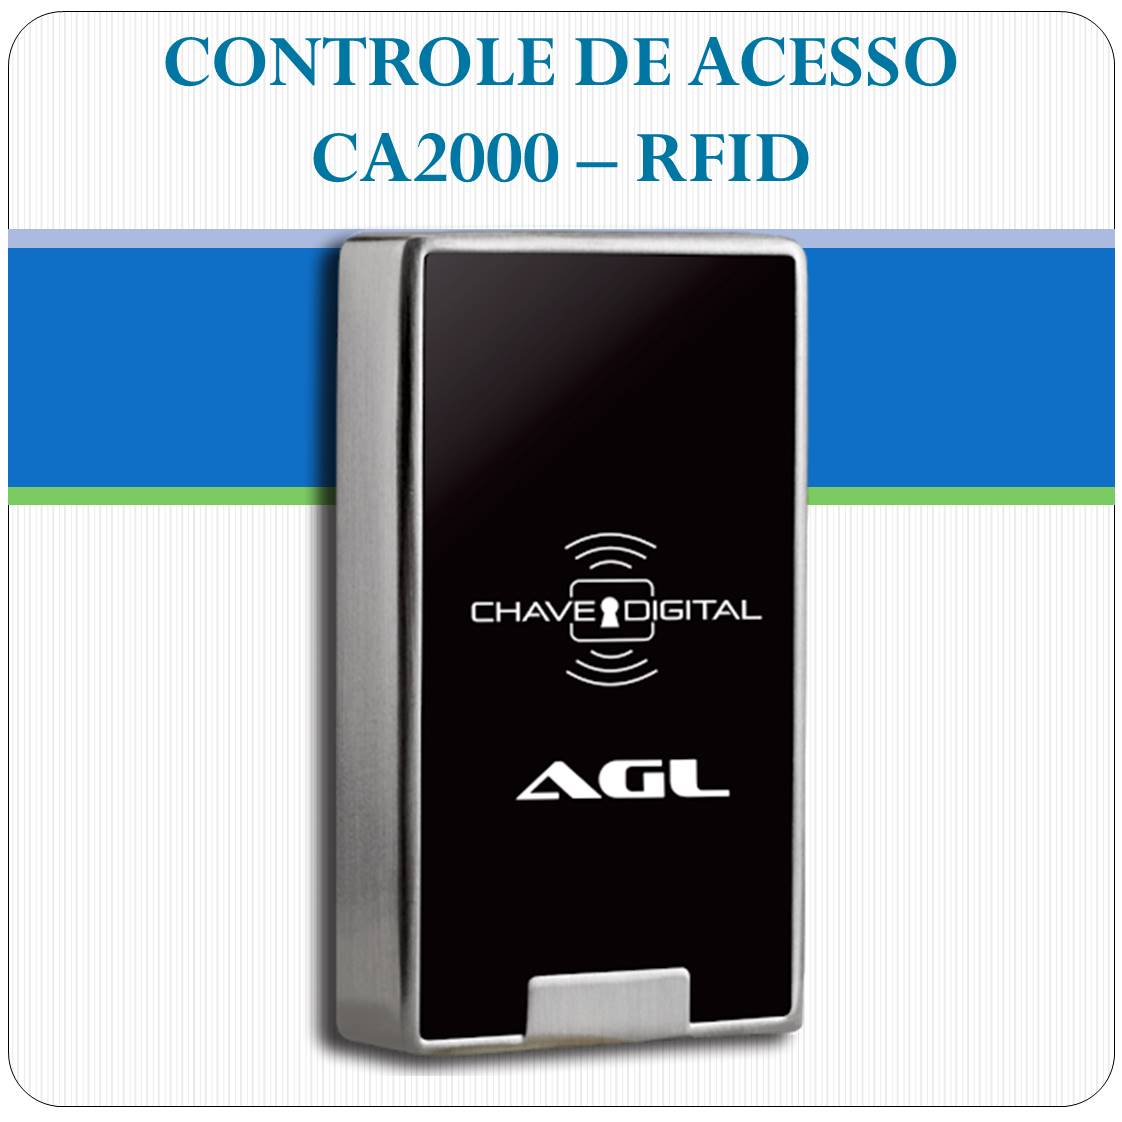 Controle de Acesso por RFID - CA2000 - AGL